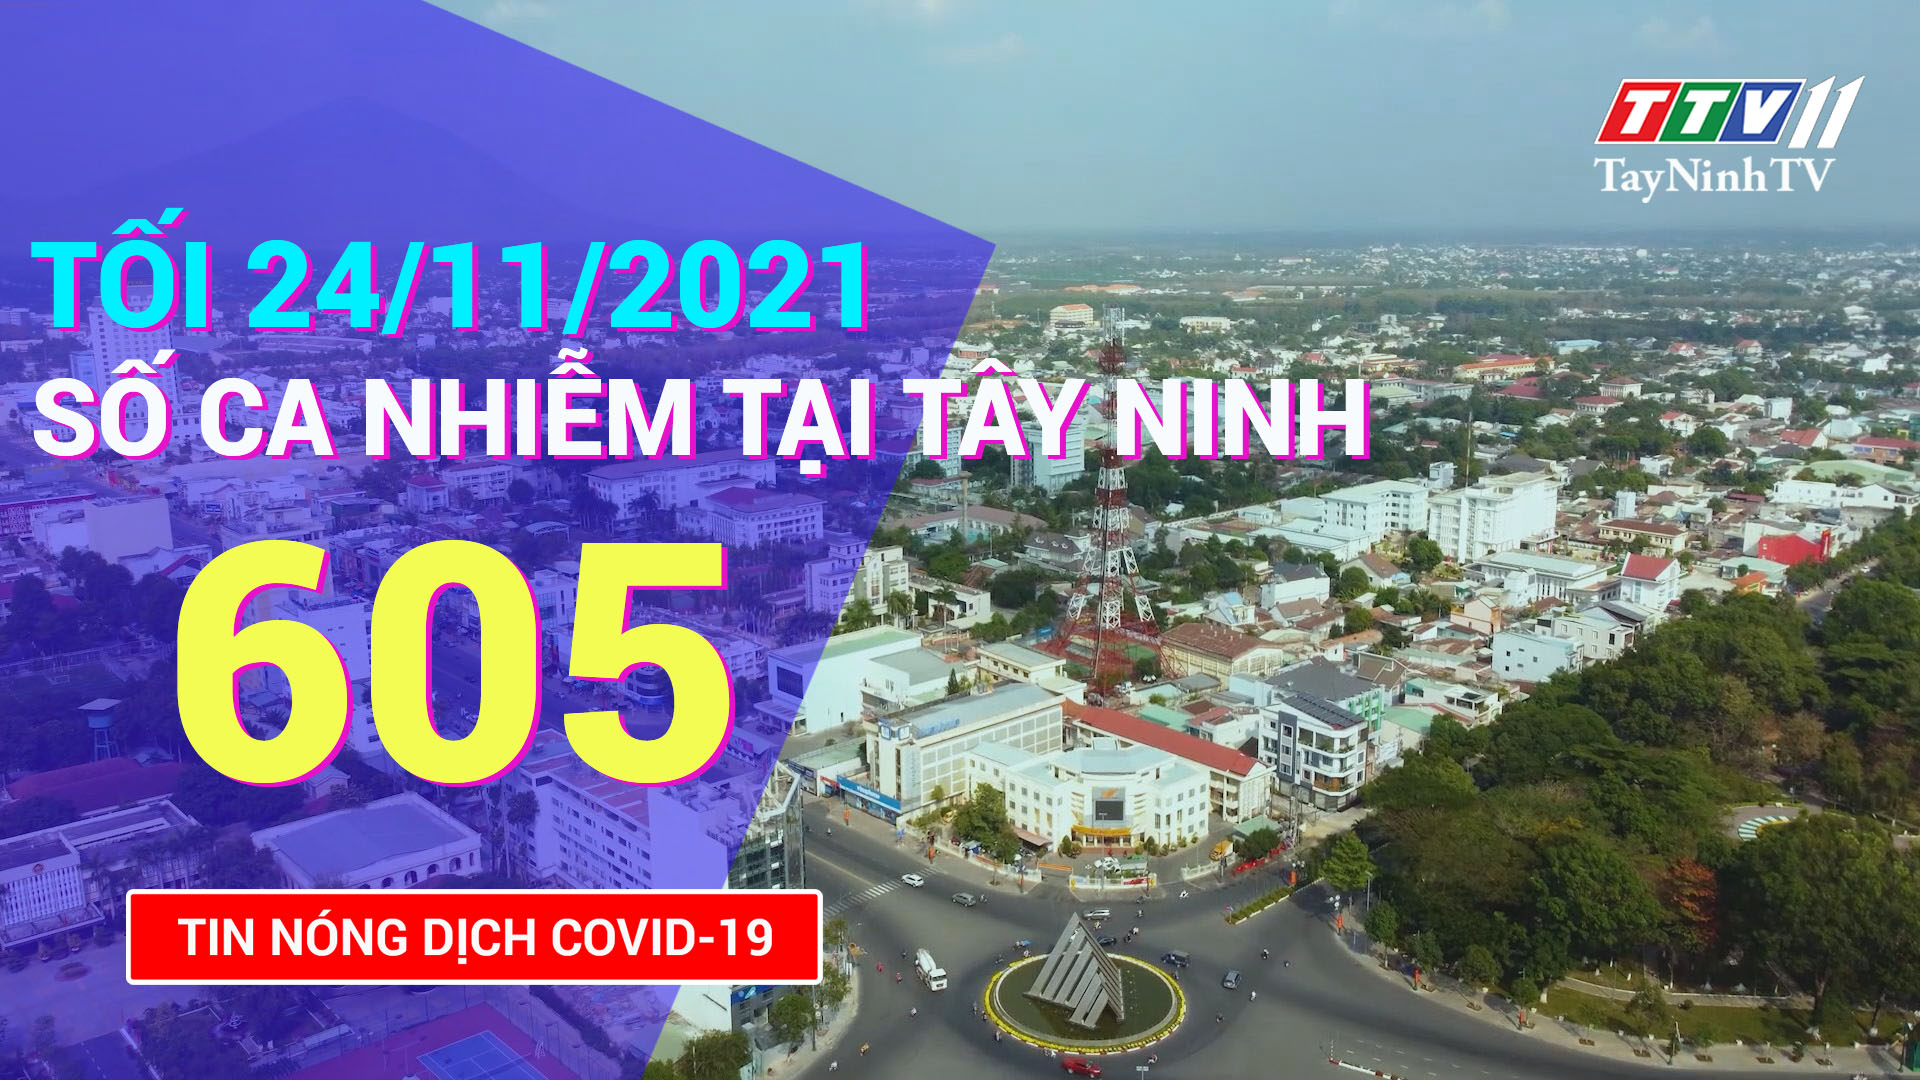 TIN TỨC COVID-19 TỐI 24/11/2021 | Tin tức hôm nay | TayNinhTV